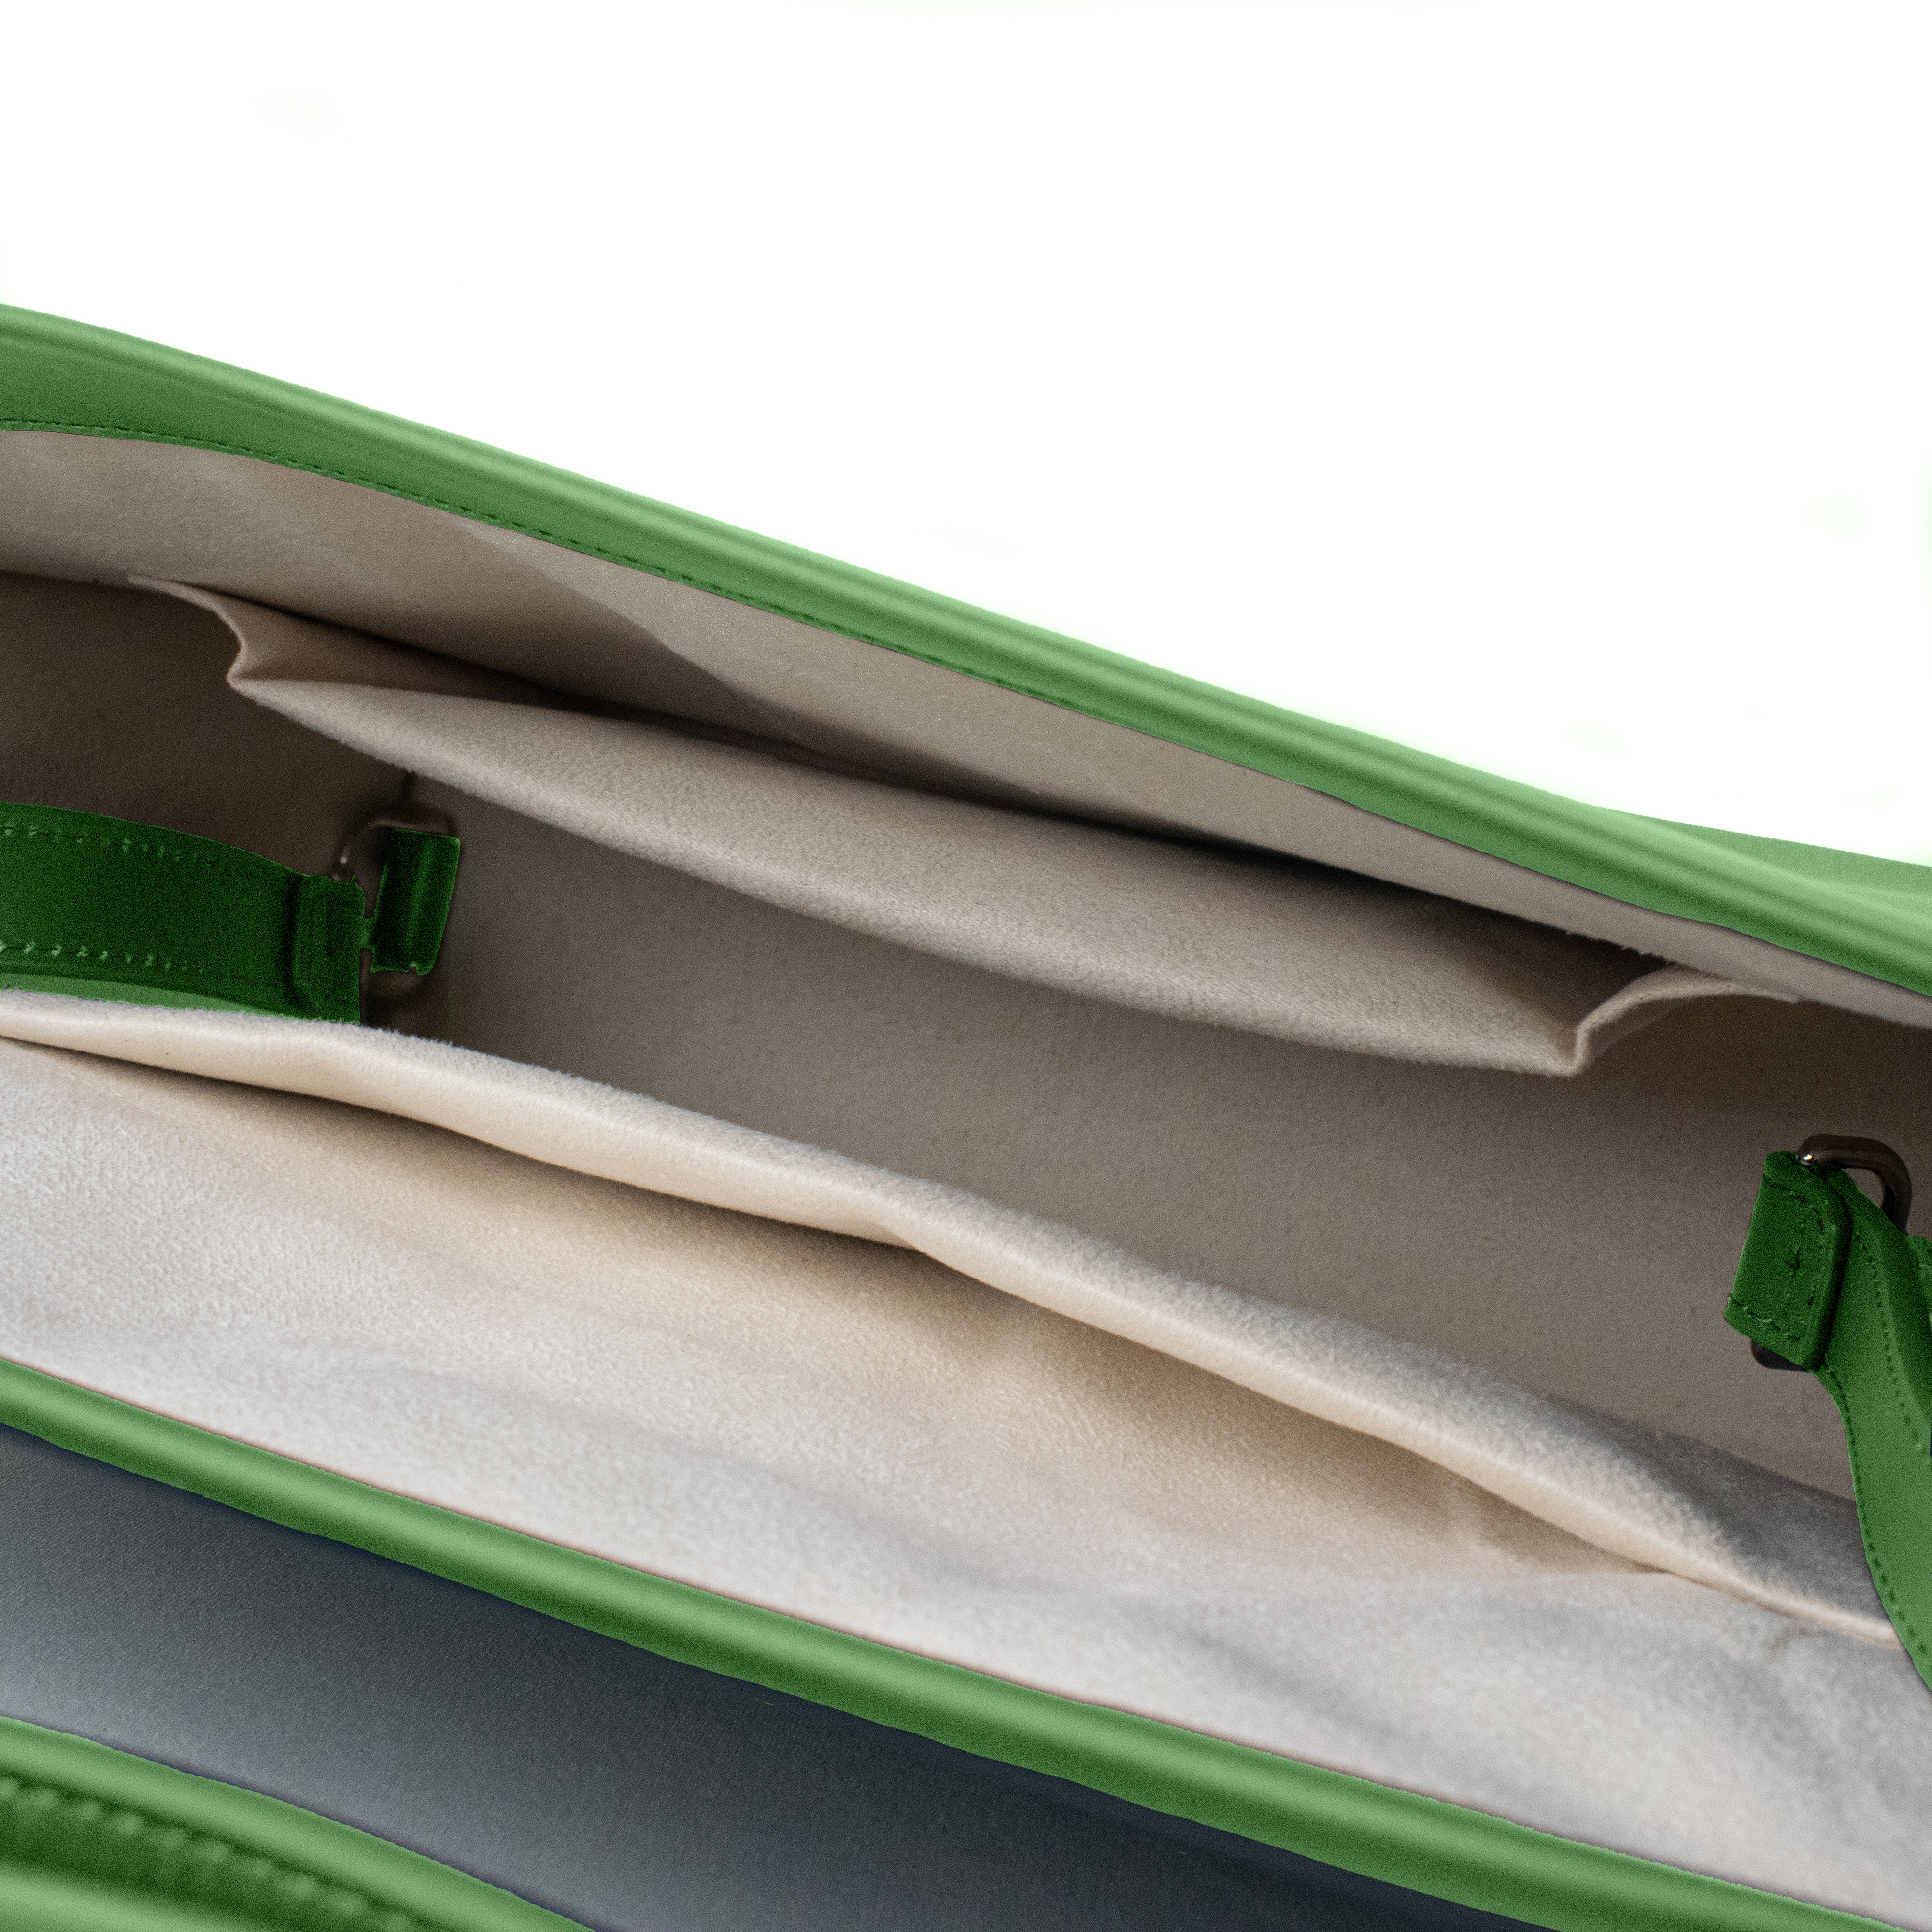 Adjustable Shoulder Bag in Sea Green